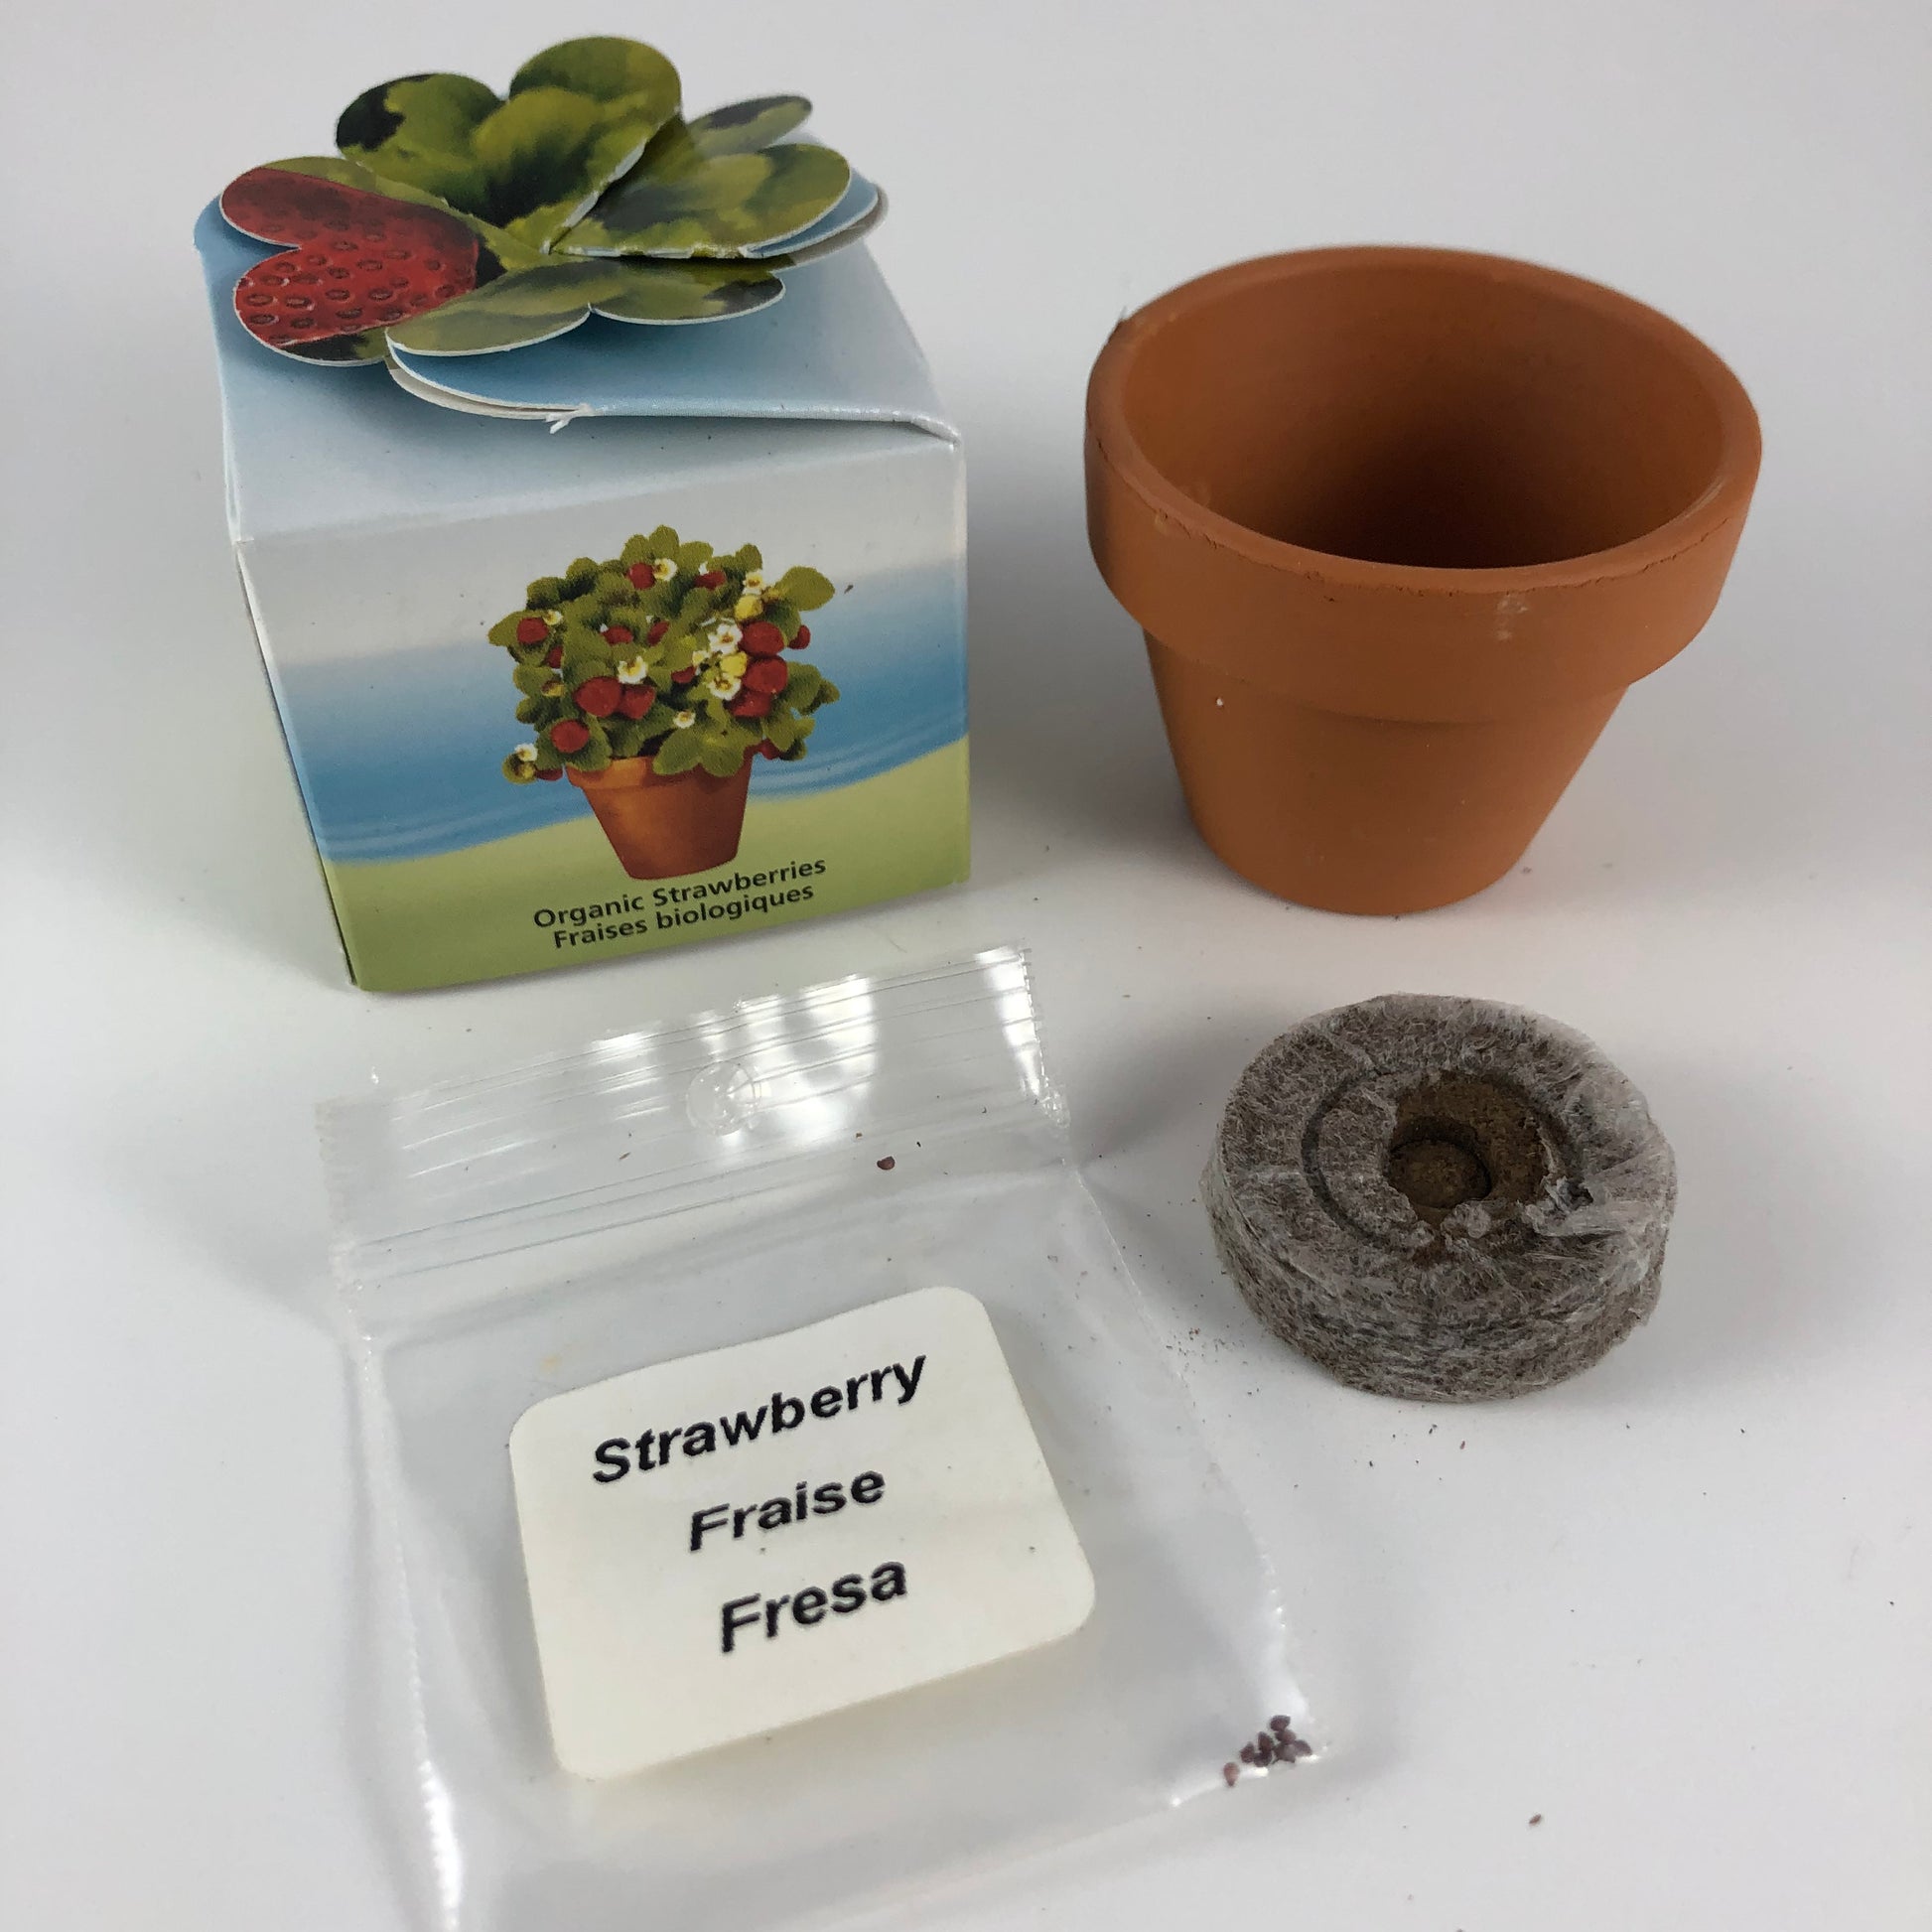 Vue de l'emballage pour le jardin d'amitié de fraises bio et son contenu